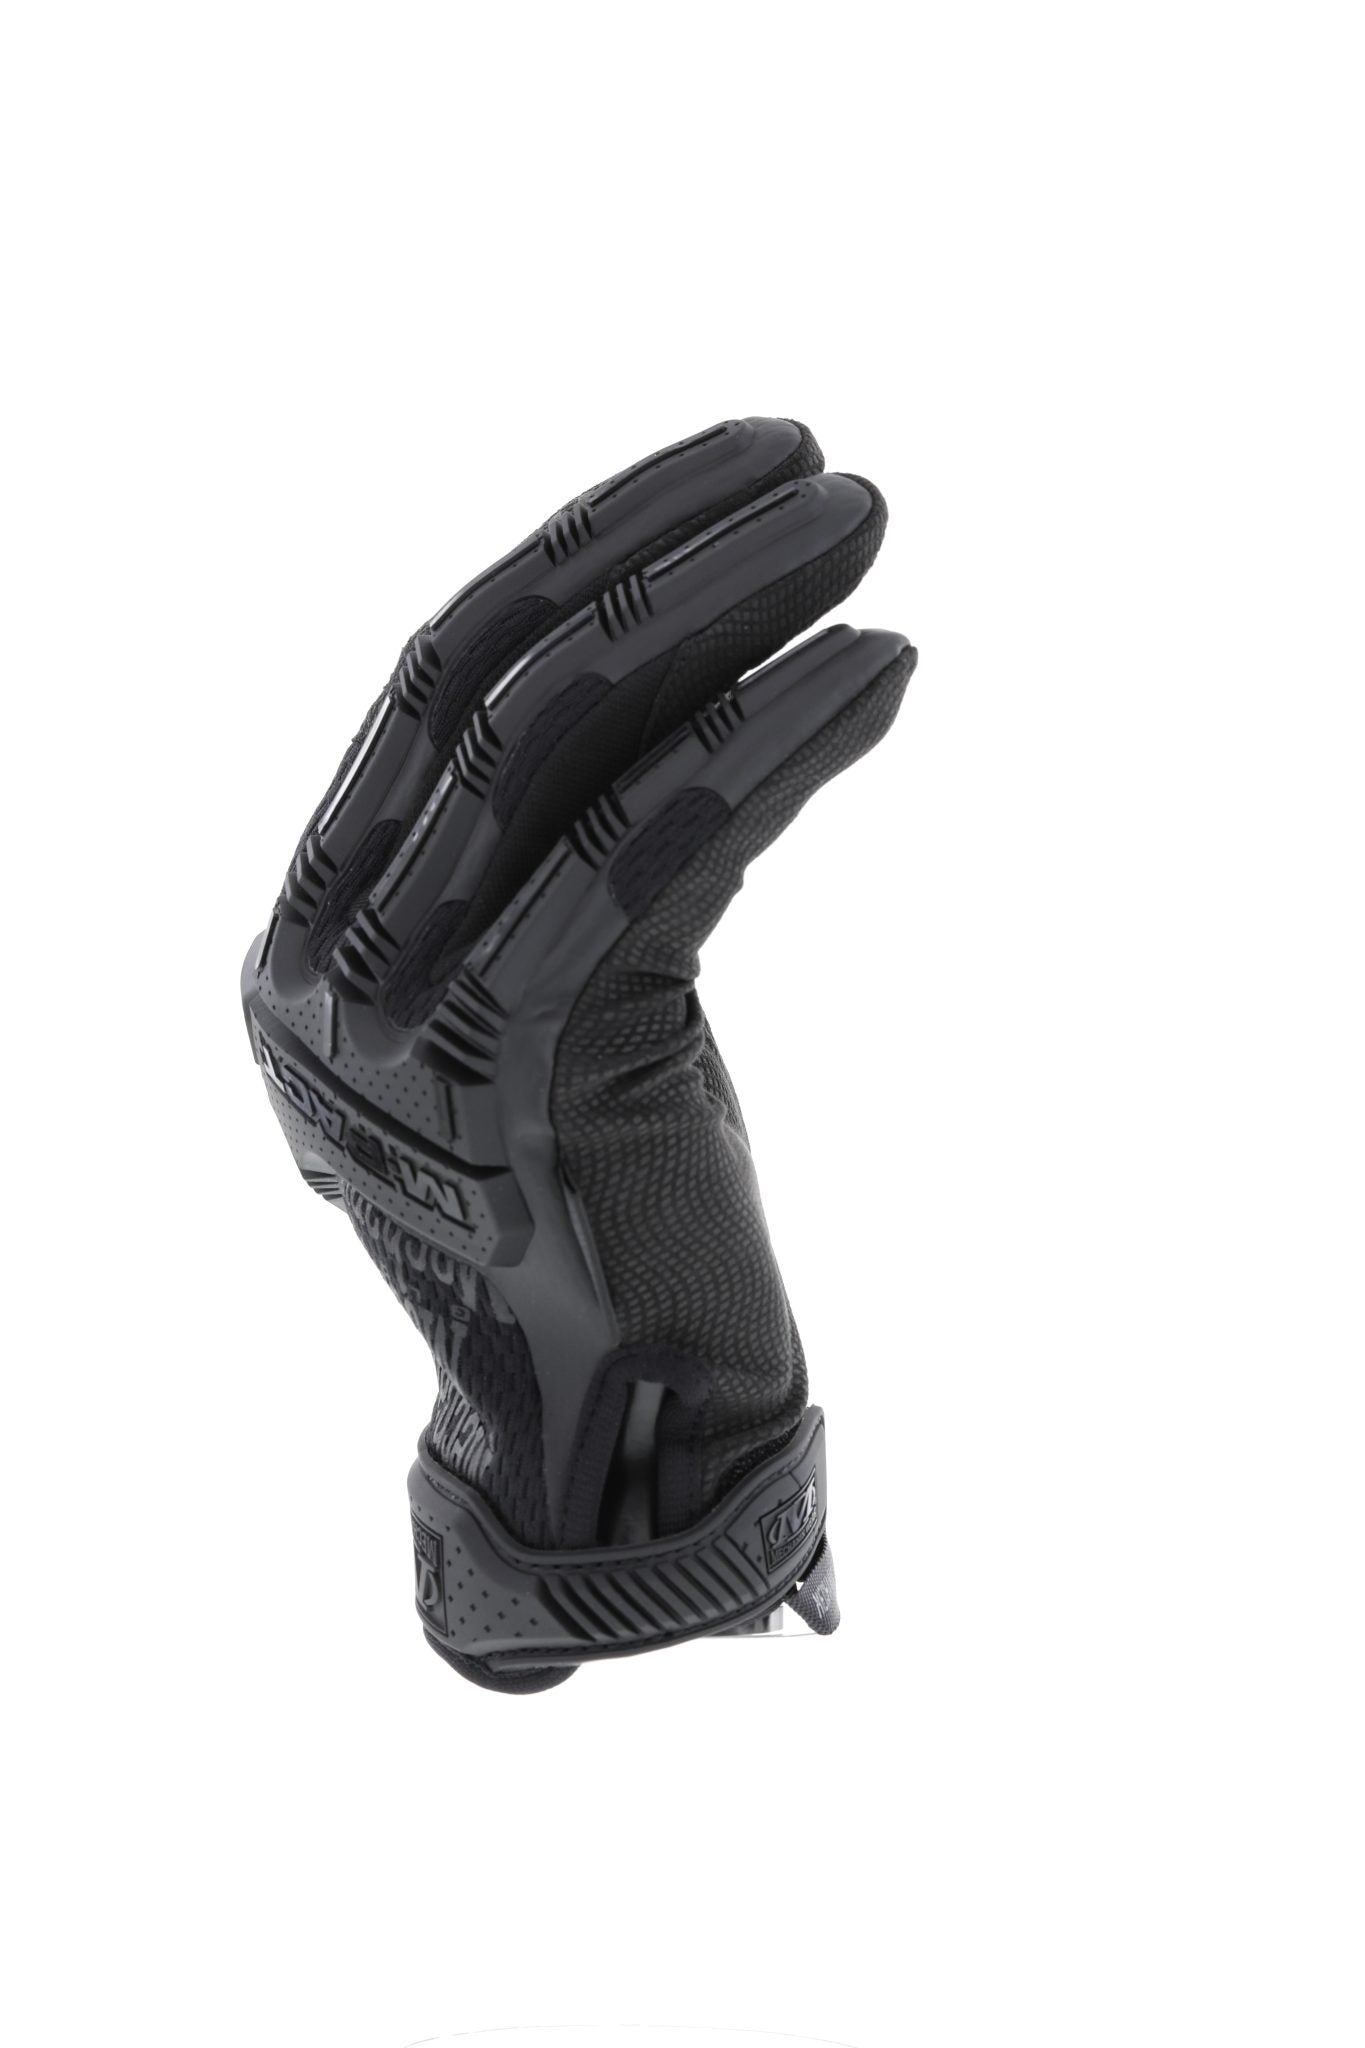 Mechanix Wear M-Pact 0.5mm High Dexterity Glove Covert Gloves Mechanix Wear Tactical Gear Supplier Tactical Distributors Australia